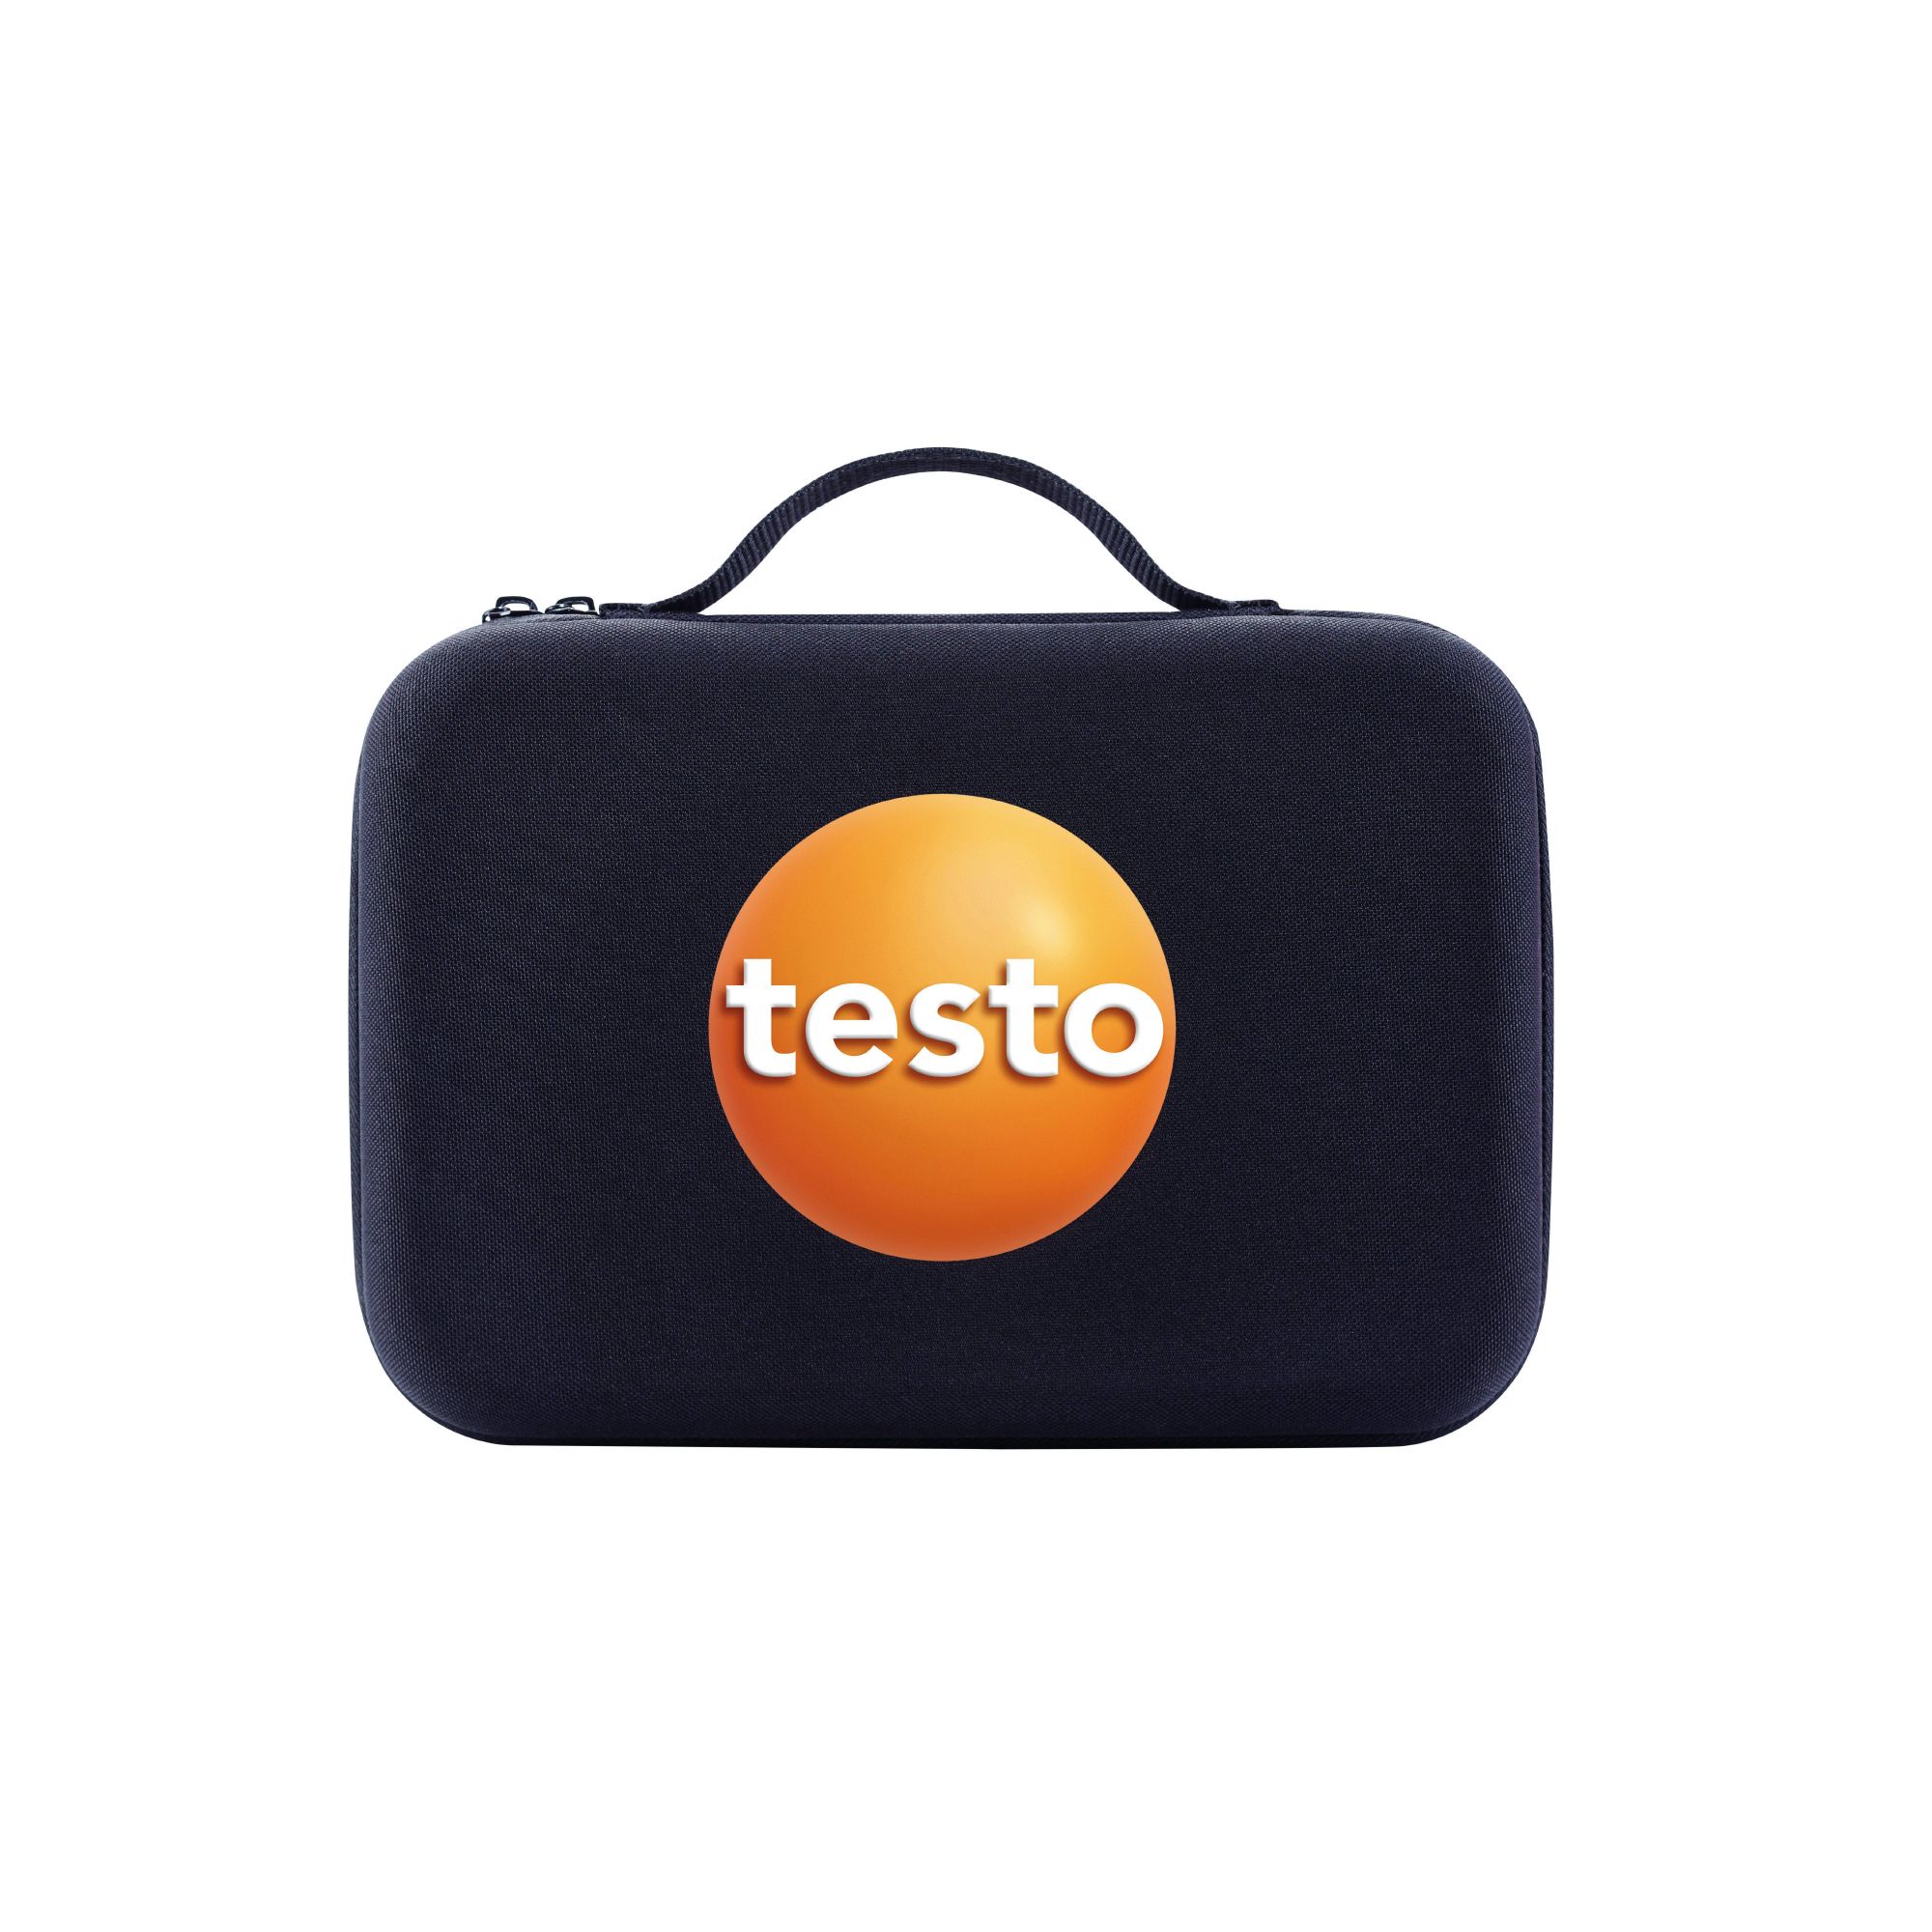 Testo Smart Case (Klima) - Aufbewahrungstasche - 0516 0260